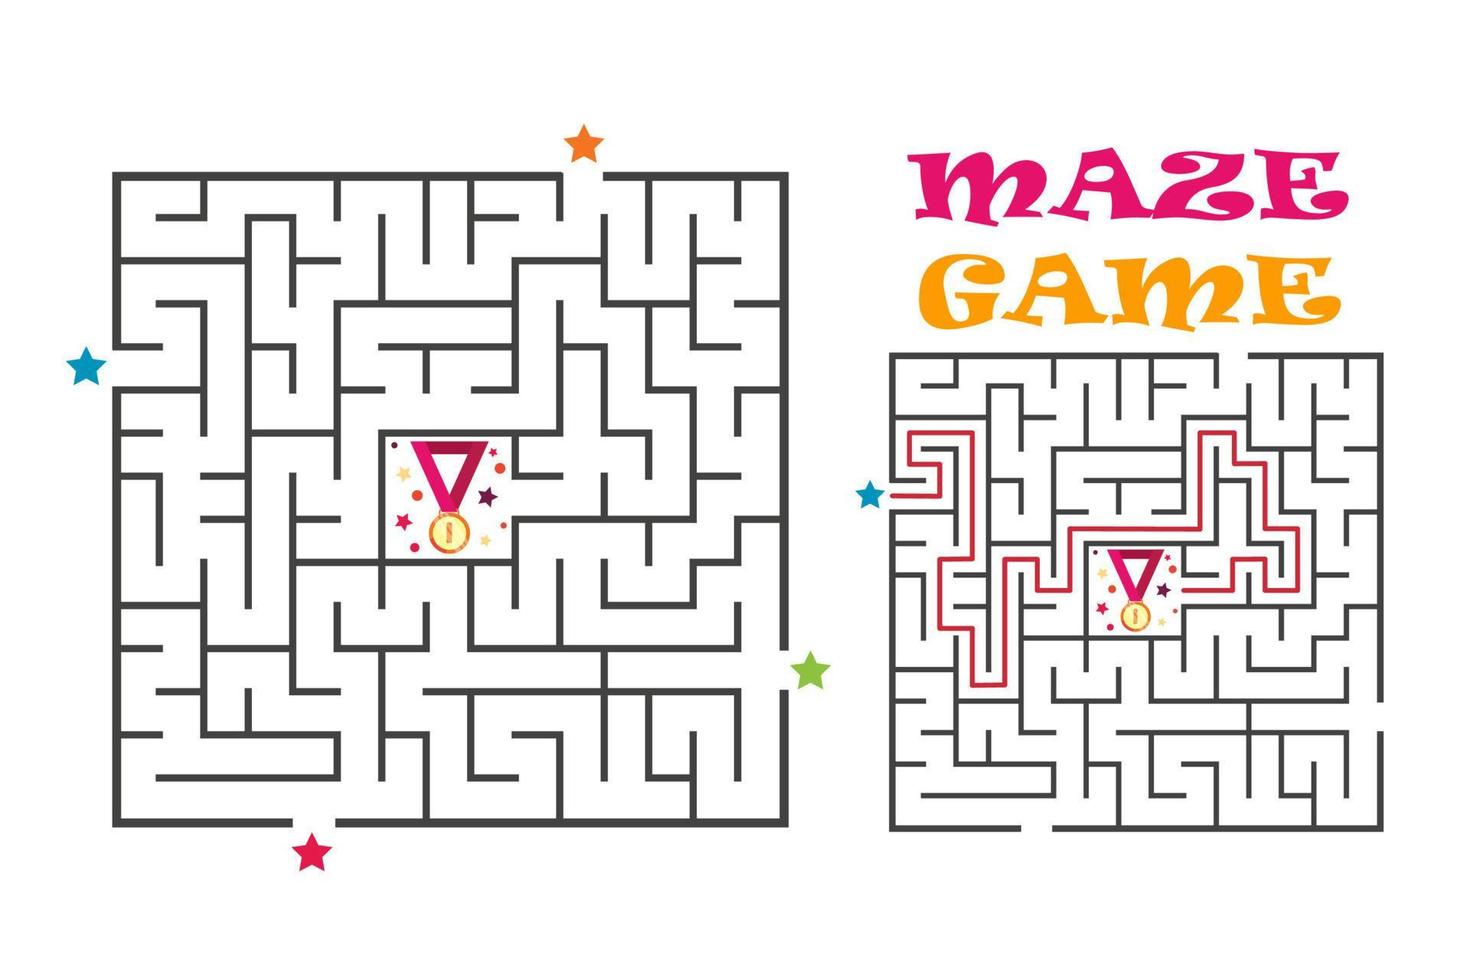 jeu de labyrinthe de labyrinthe carré pour les enfants. énigme logique avec médaille. quatre entrées et une bonne façon d'aller. illustration vectorielle plate isolée sur fond blanc. vecteur